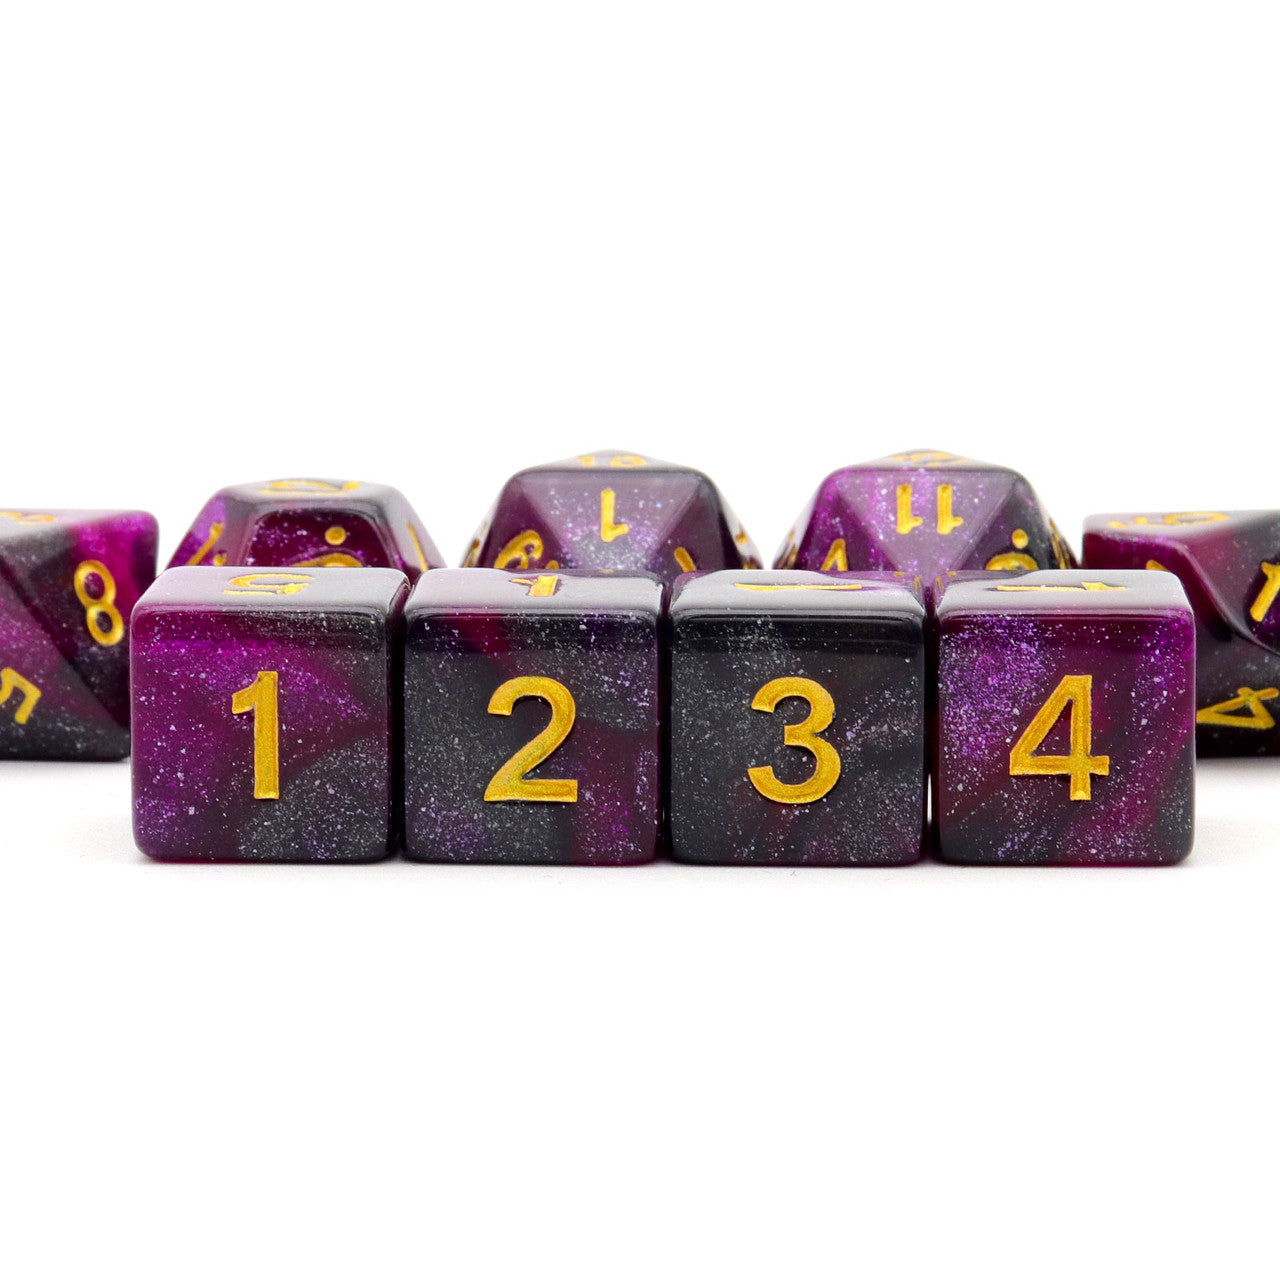 dnd dice, rpg dice, purple dice, dnd dice set,black dice